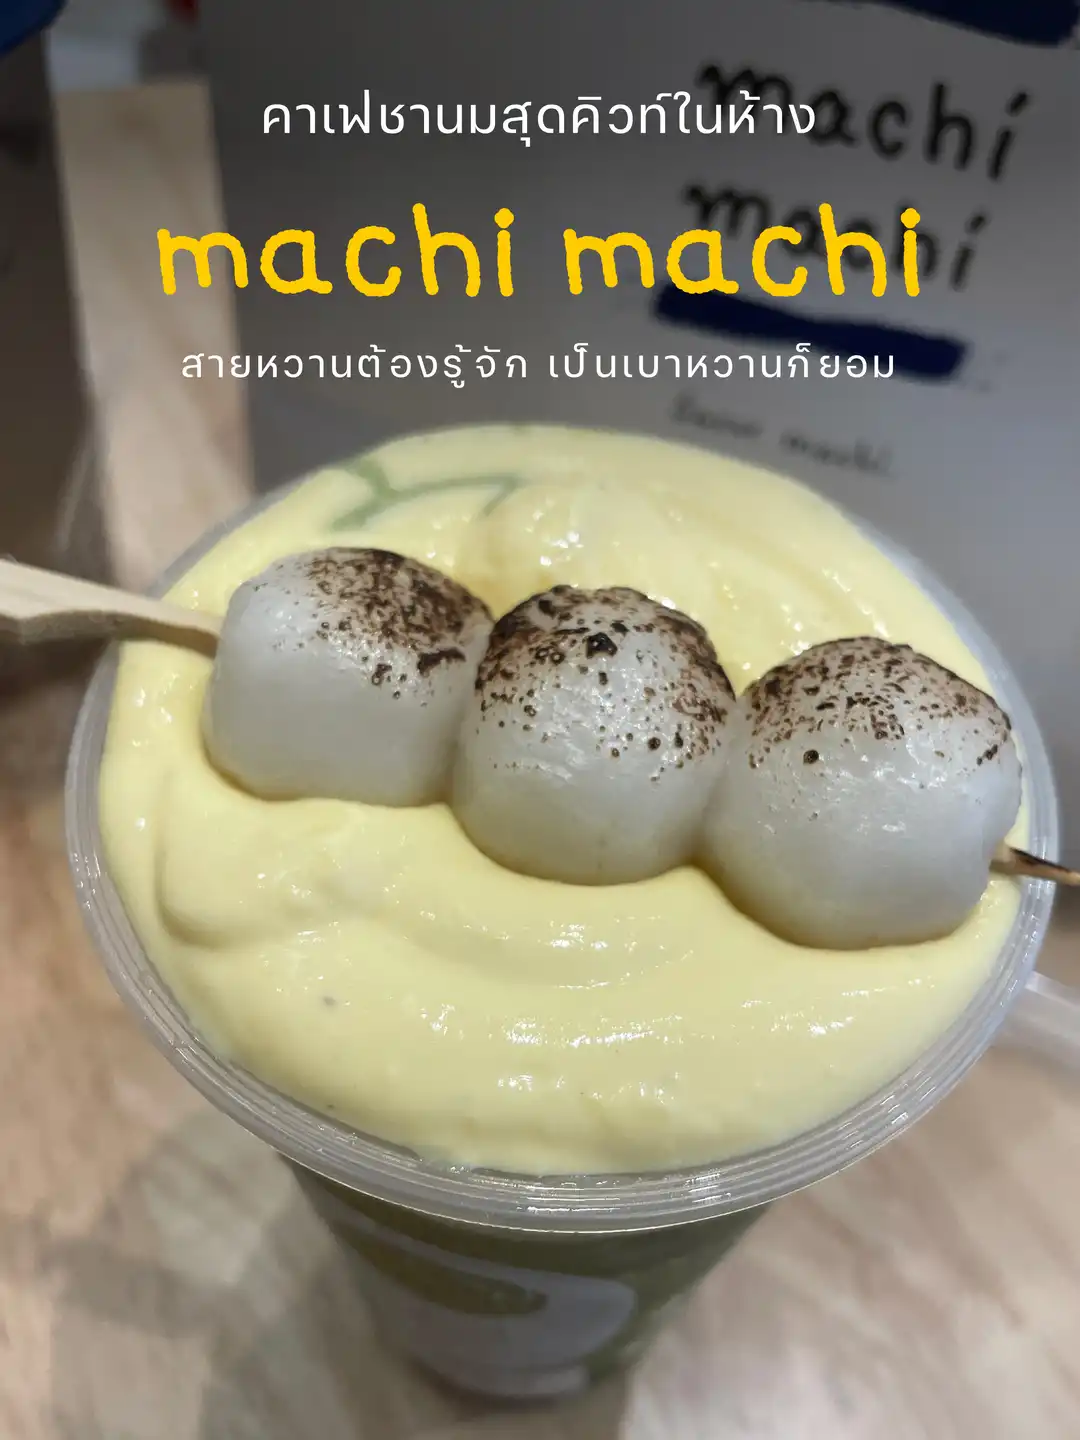 machi machi_